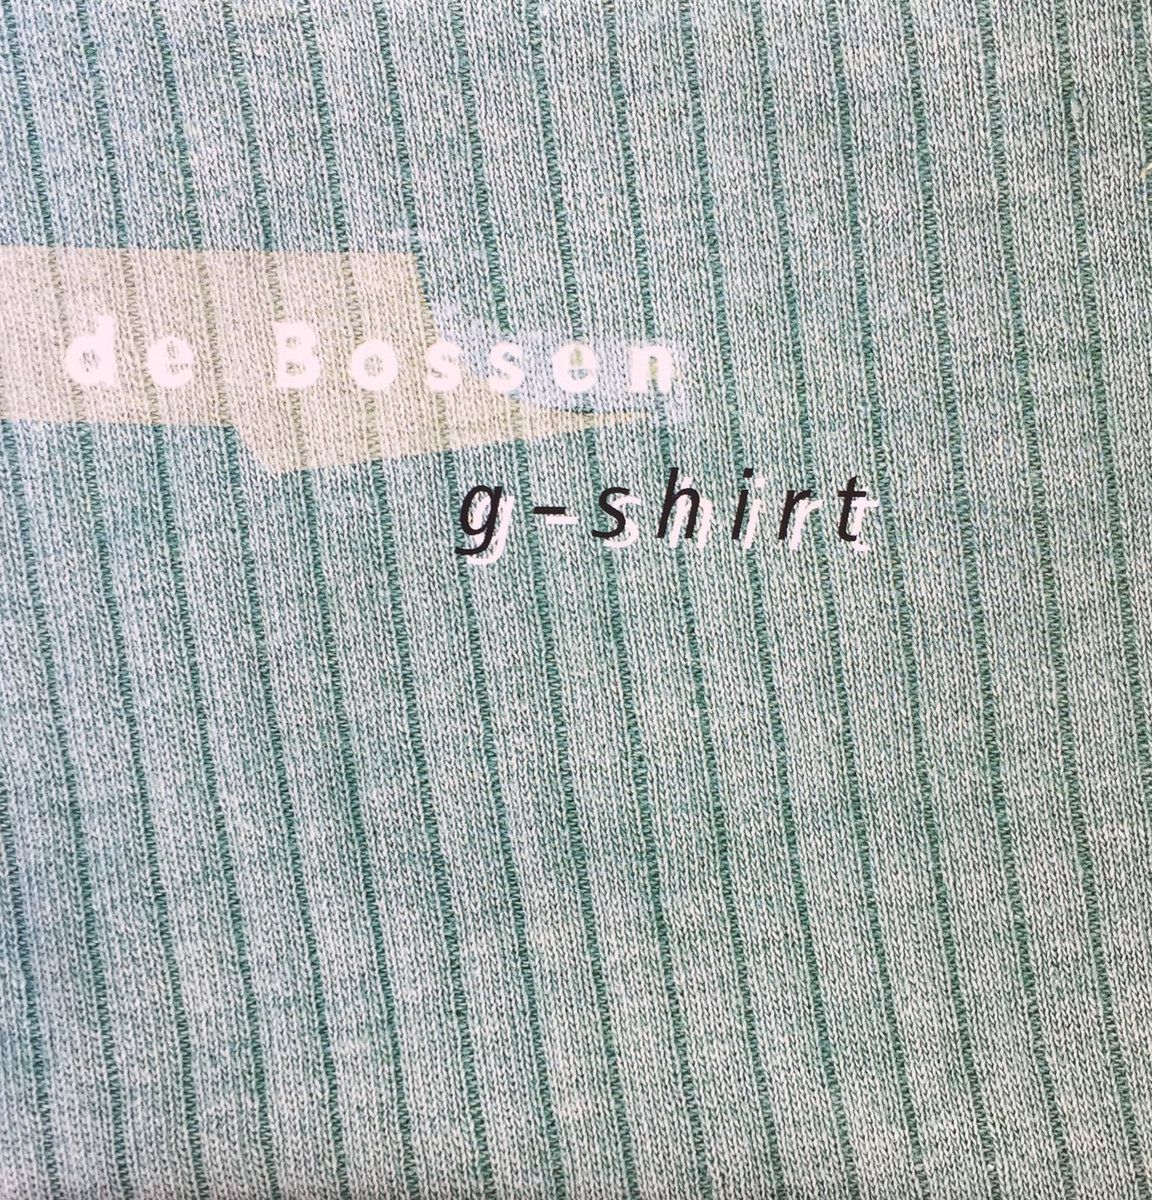 De Bossen - G-Shirt front cover